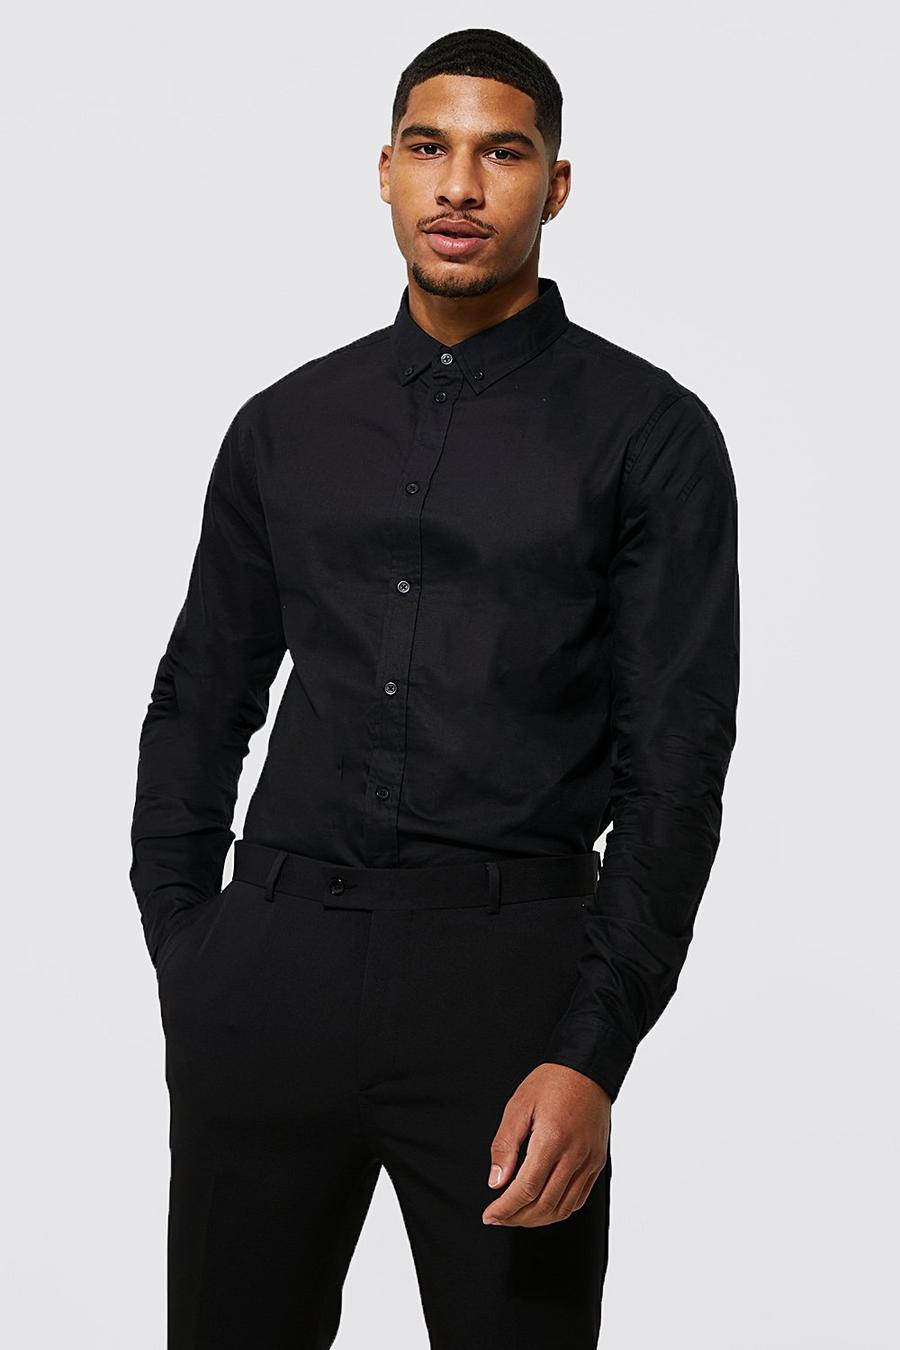 שחור nero חולצת אוקספורד עם שרוולים ארוכים, לגברים גבוהים